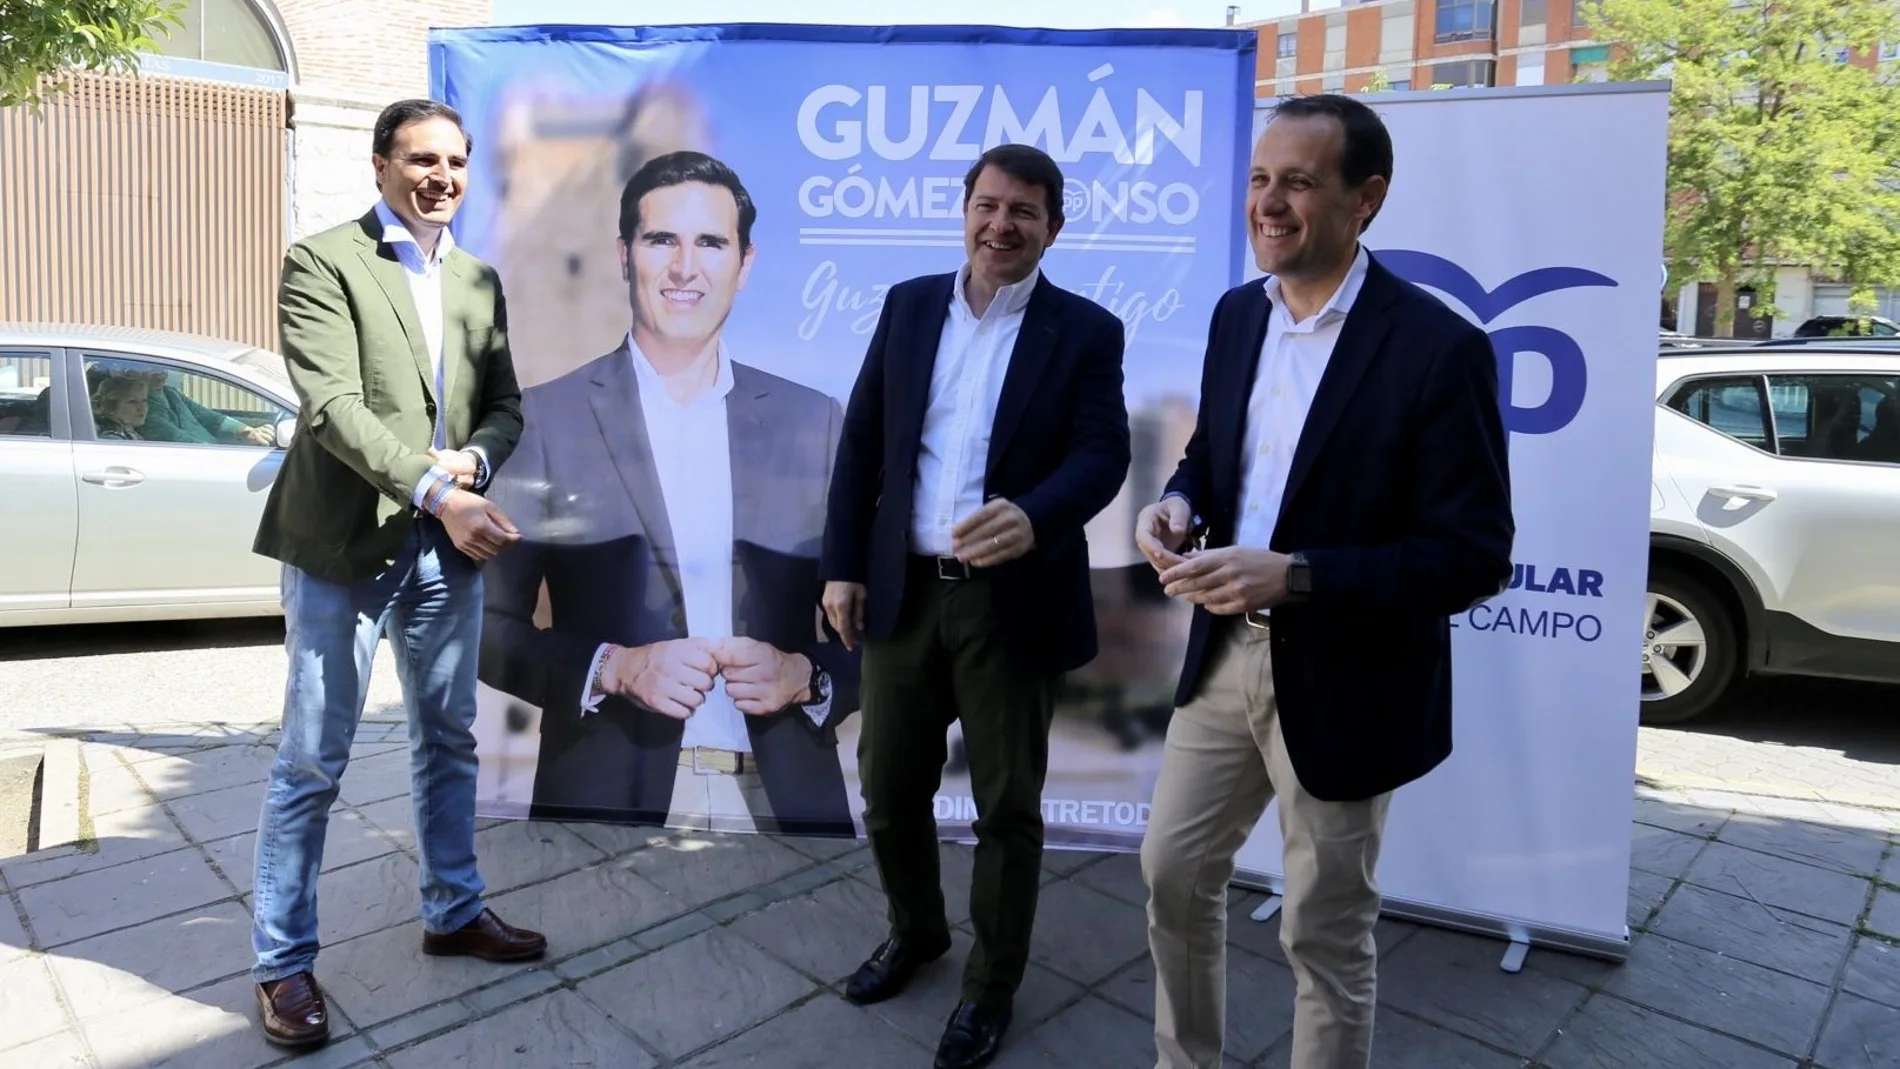 El candidato del PP en Medina del Campo, Guzmán Gómez, junto a Mañueco y Conrado Íscar